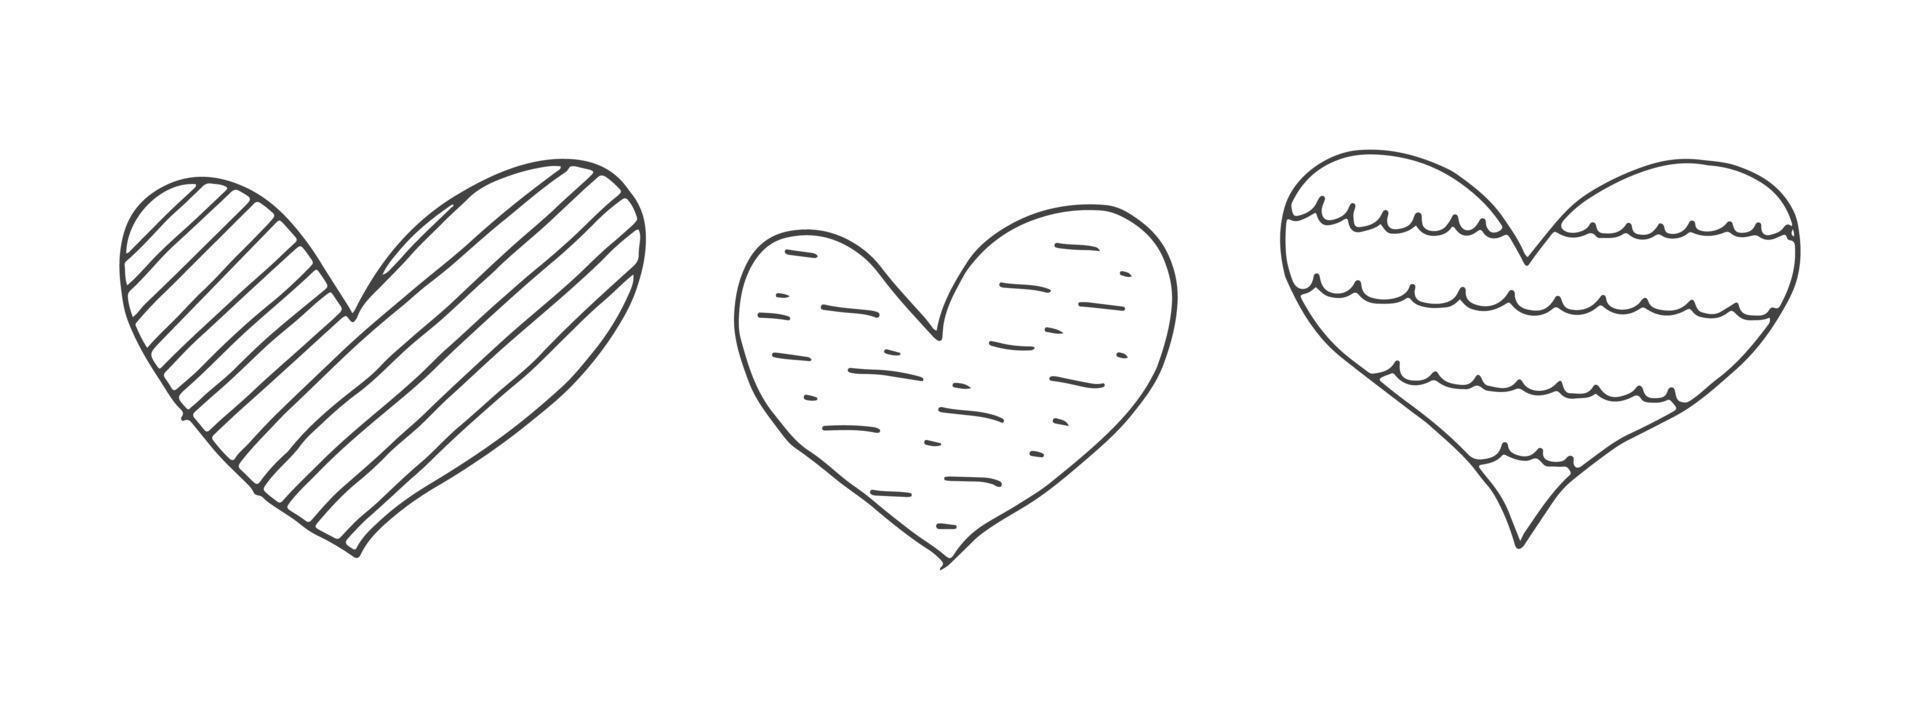 große menge niedlicher handgezeichneter gekritzelelemente über die liebe. Nachrichtenaufkleber für Apps. symbole für valentinstag, romantische veranstaltungen und hochzeit. Herzen mit Streifen und Textur. vektor